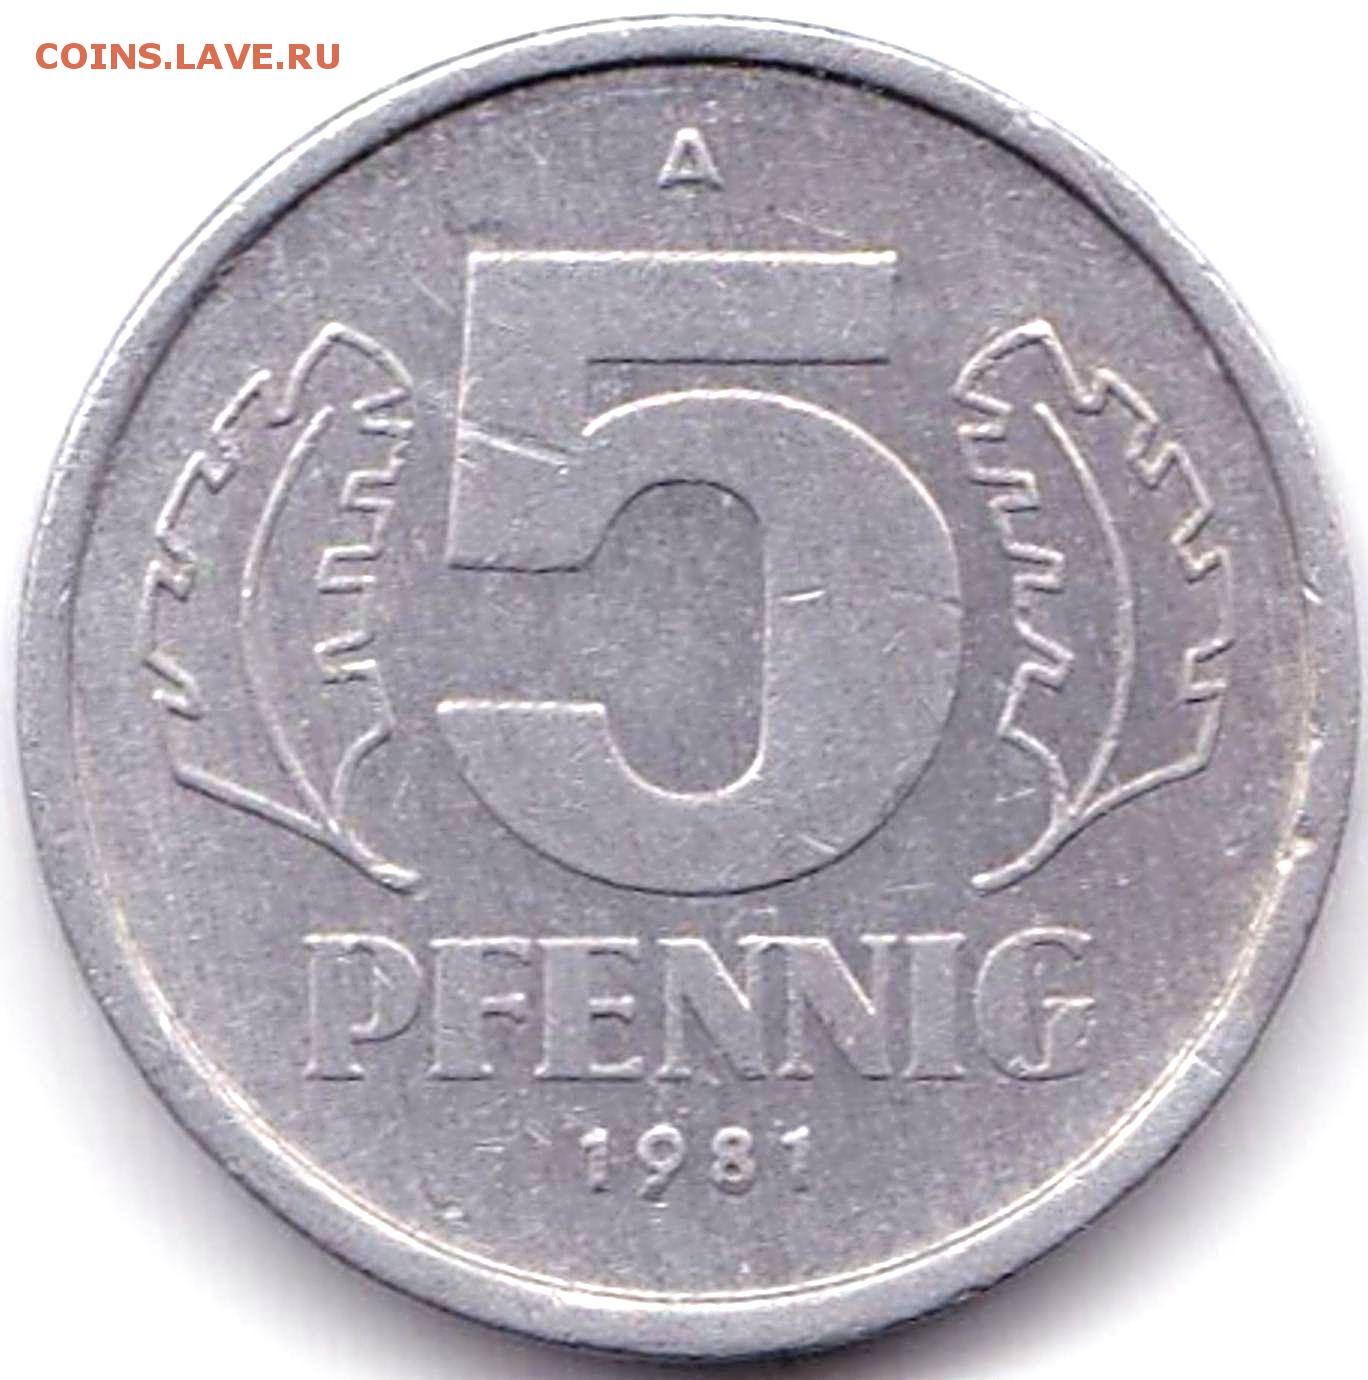 Гдр и болгария. 5 Пфеннигов 1968 ГДР. Германская монета ГДР 1пфеннинг. 5 Пфеннигов ГДР. Немецкие монеты 1975 года.